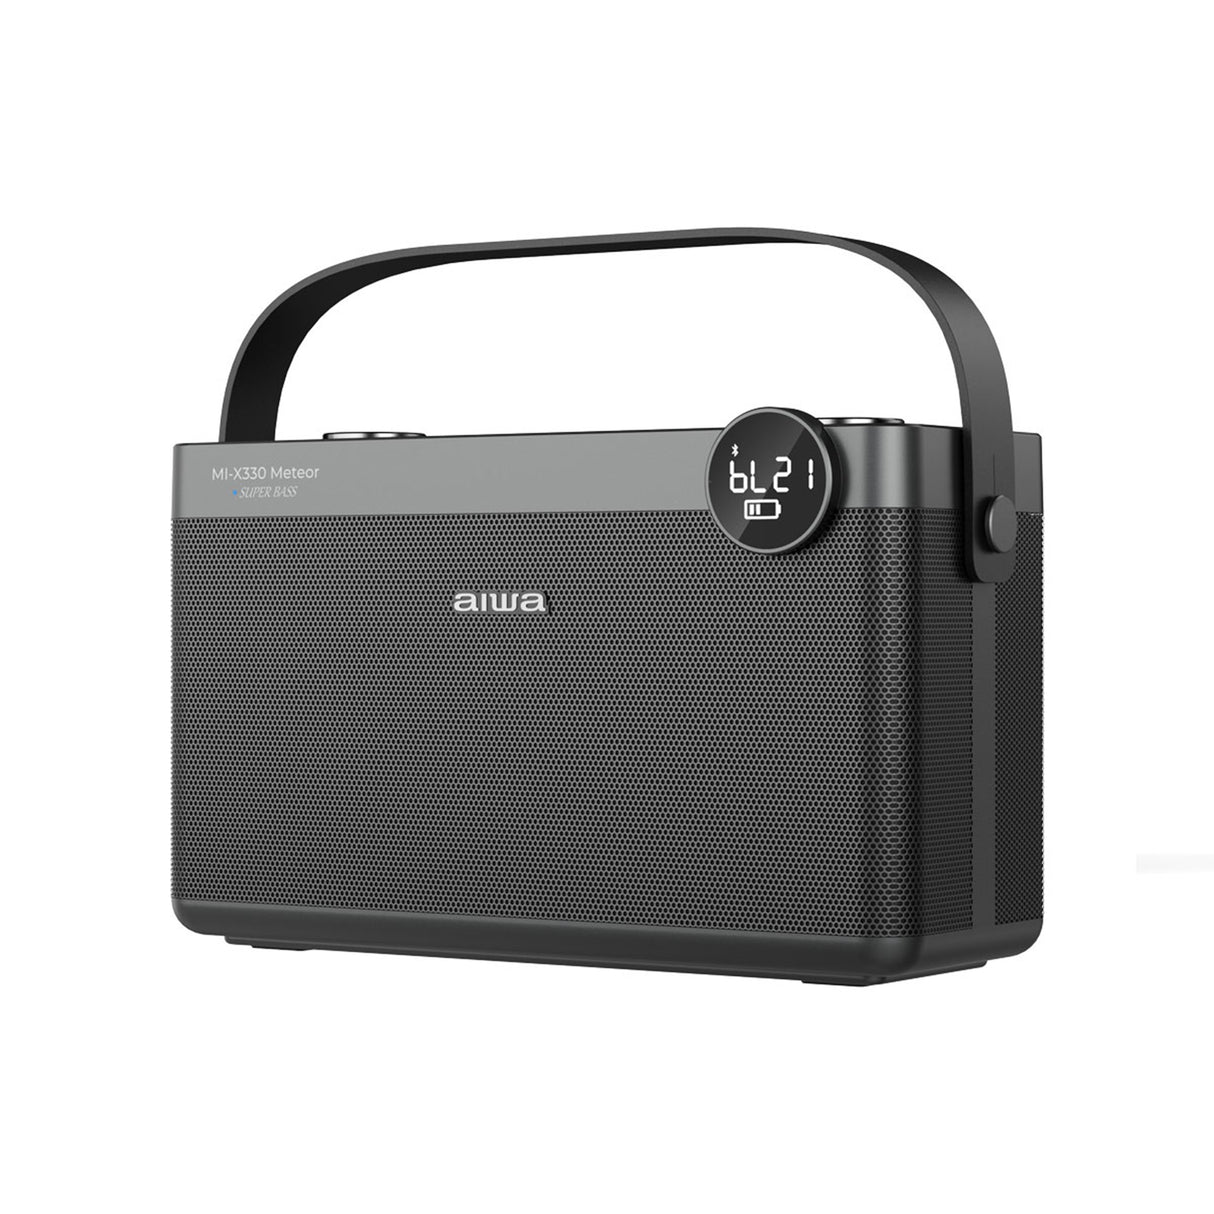 Aiwa MI-X330 - Portable Wirless Bluetooth Speaker